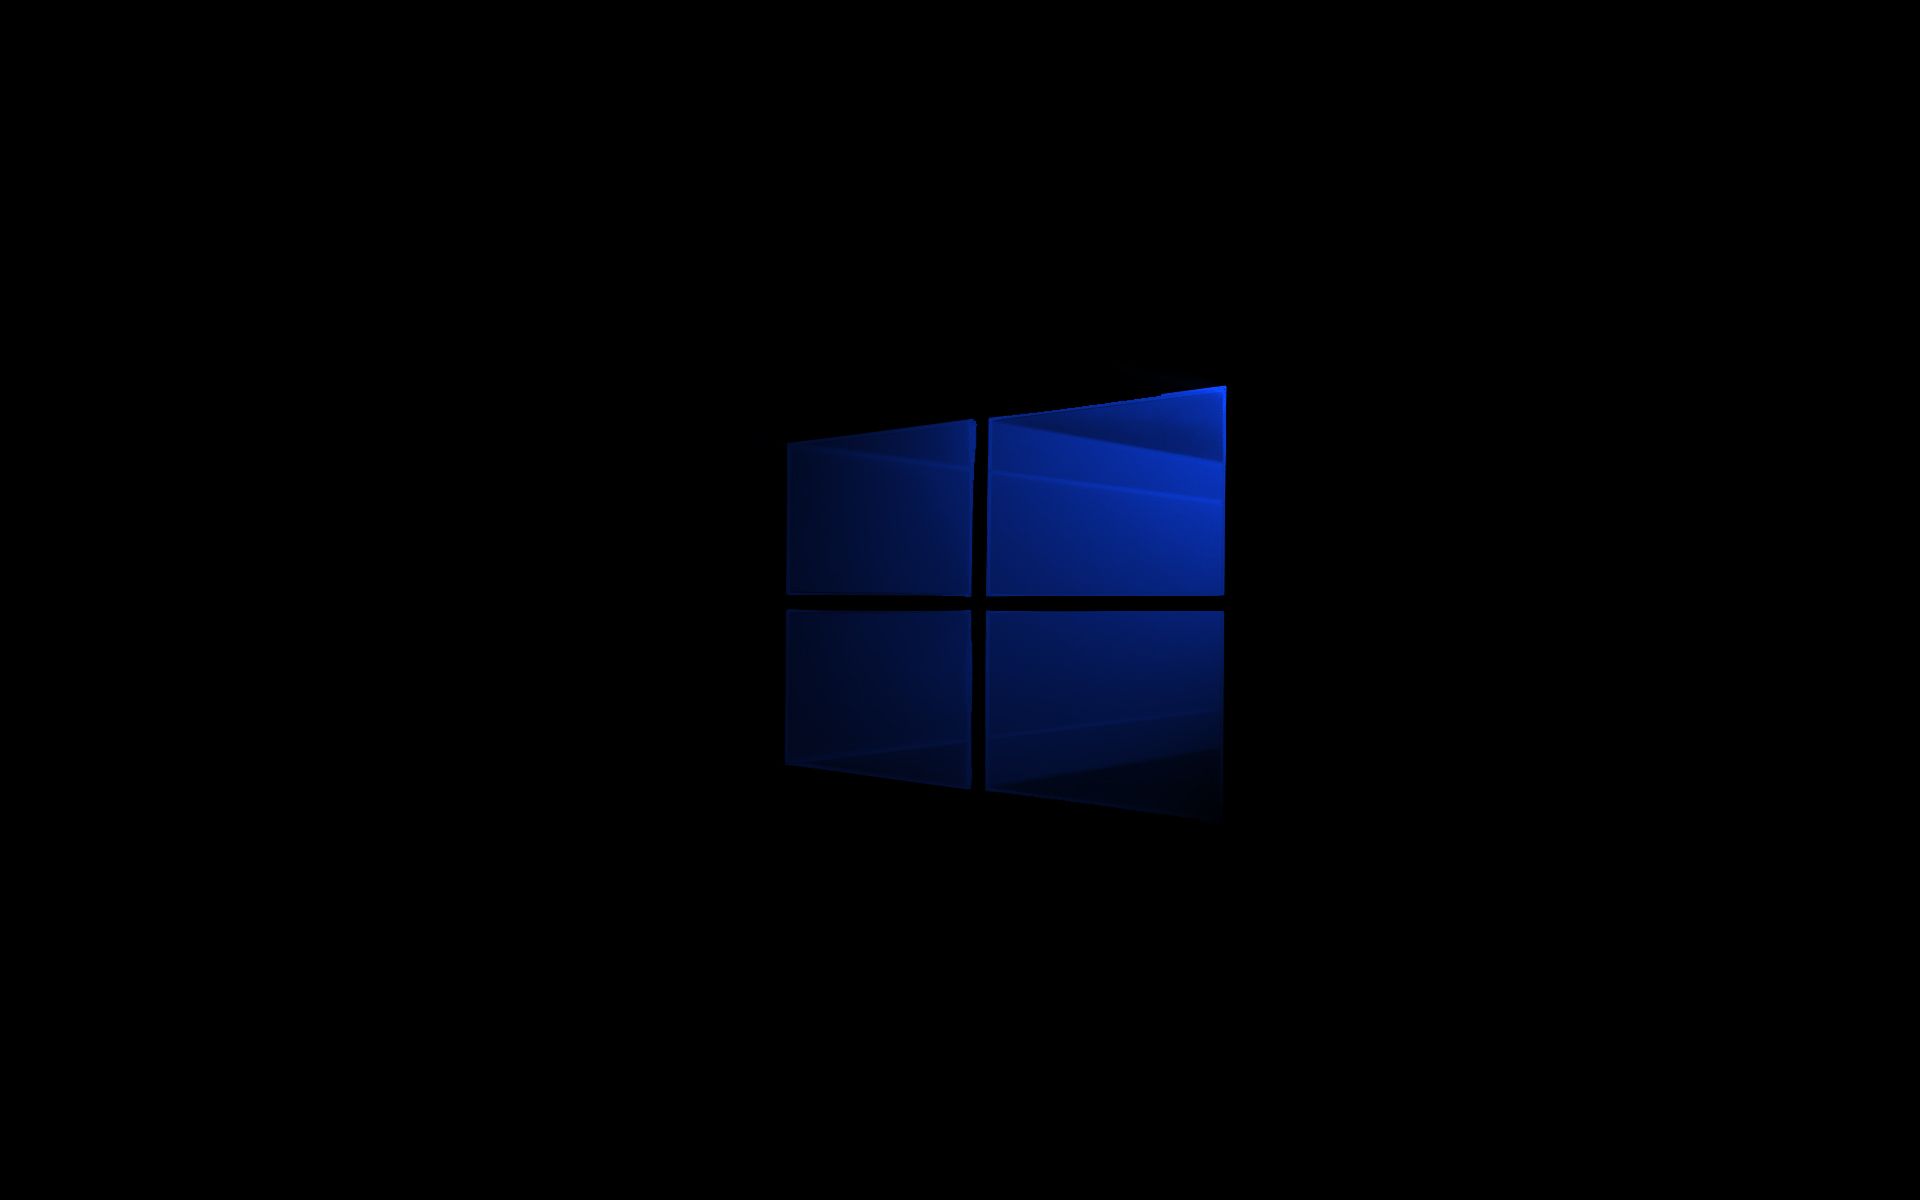 Minimalist Windows 10 Wallpaper